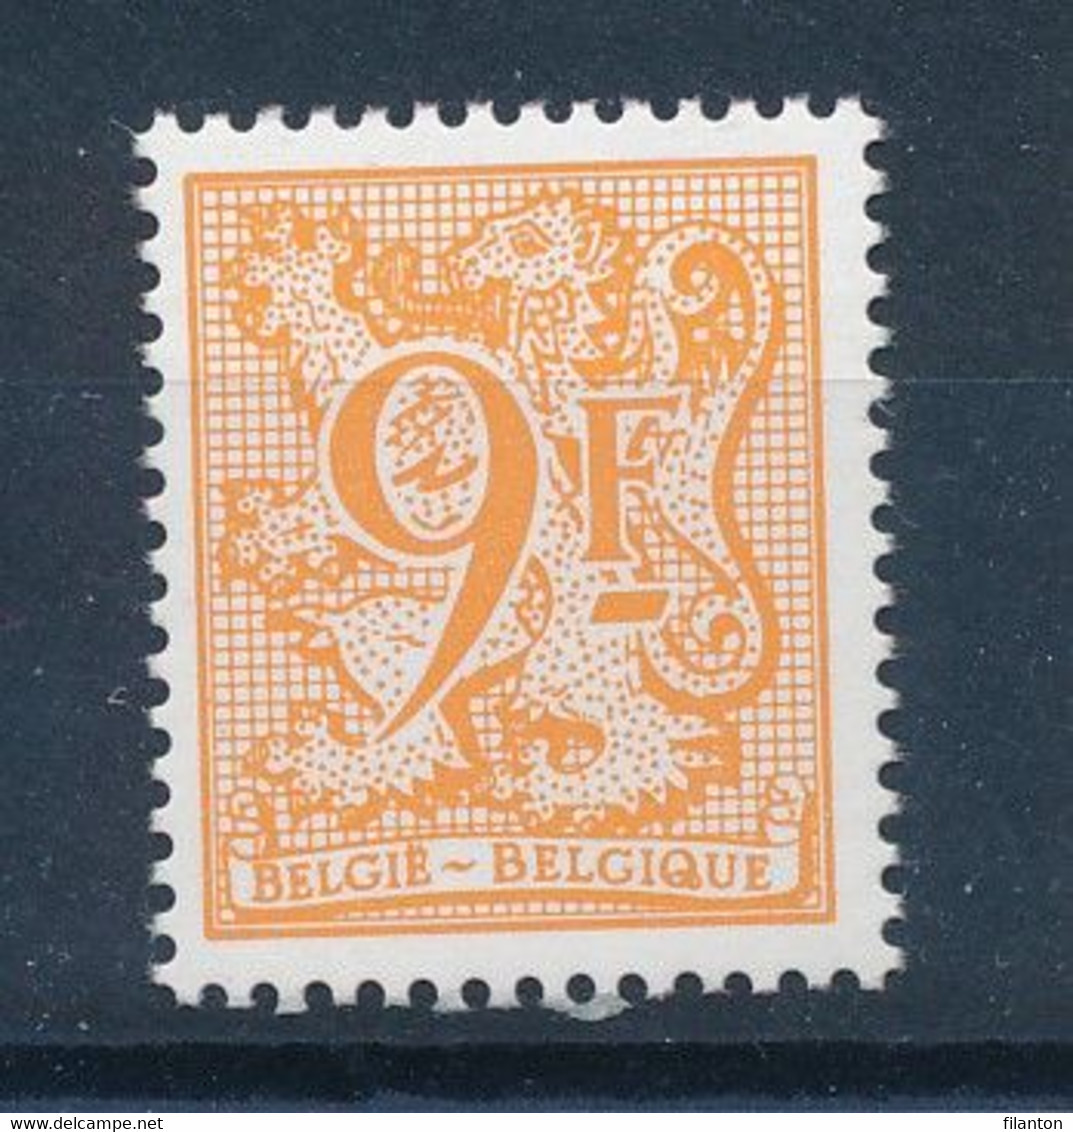 BELGIE - OBP Nr 2159 P6 (groene Gom/gomme Verdâtre) - Cijfer Op Heraldieke Leeuw - MNH** - 1977-1985 Figure On Lion